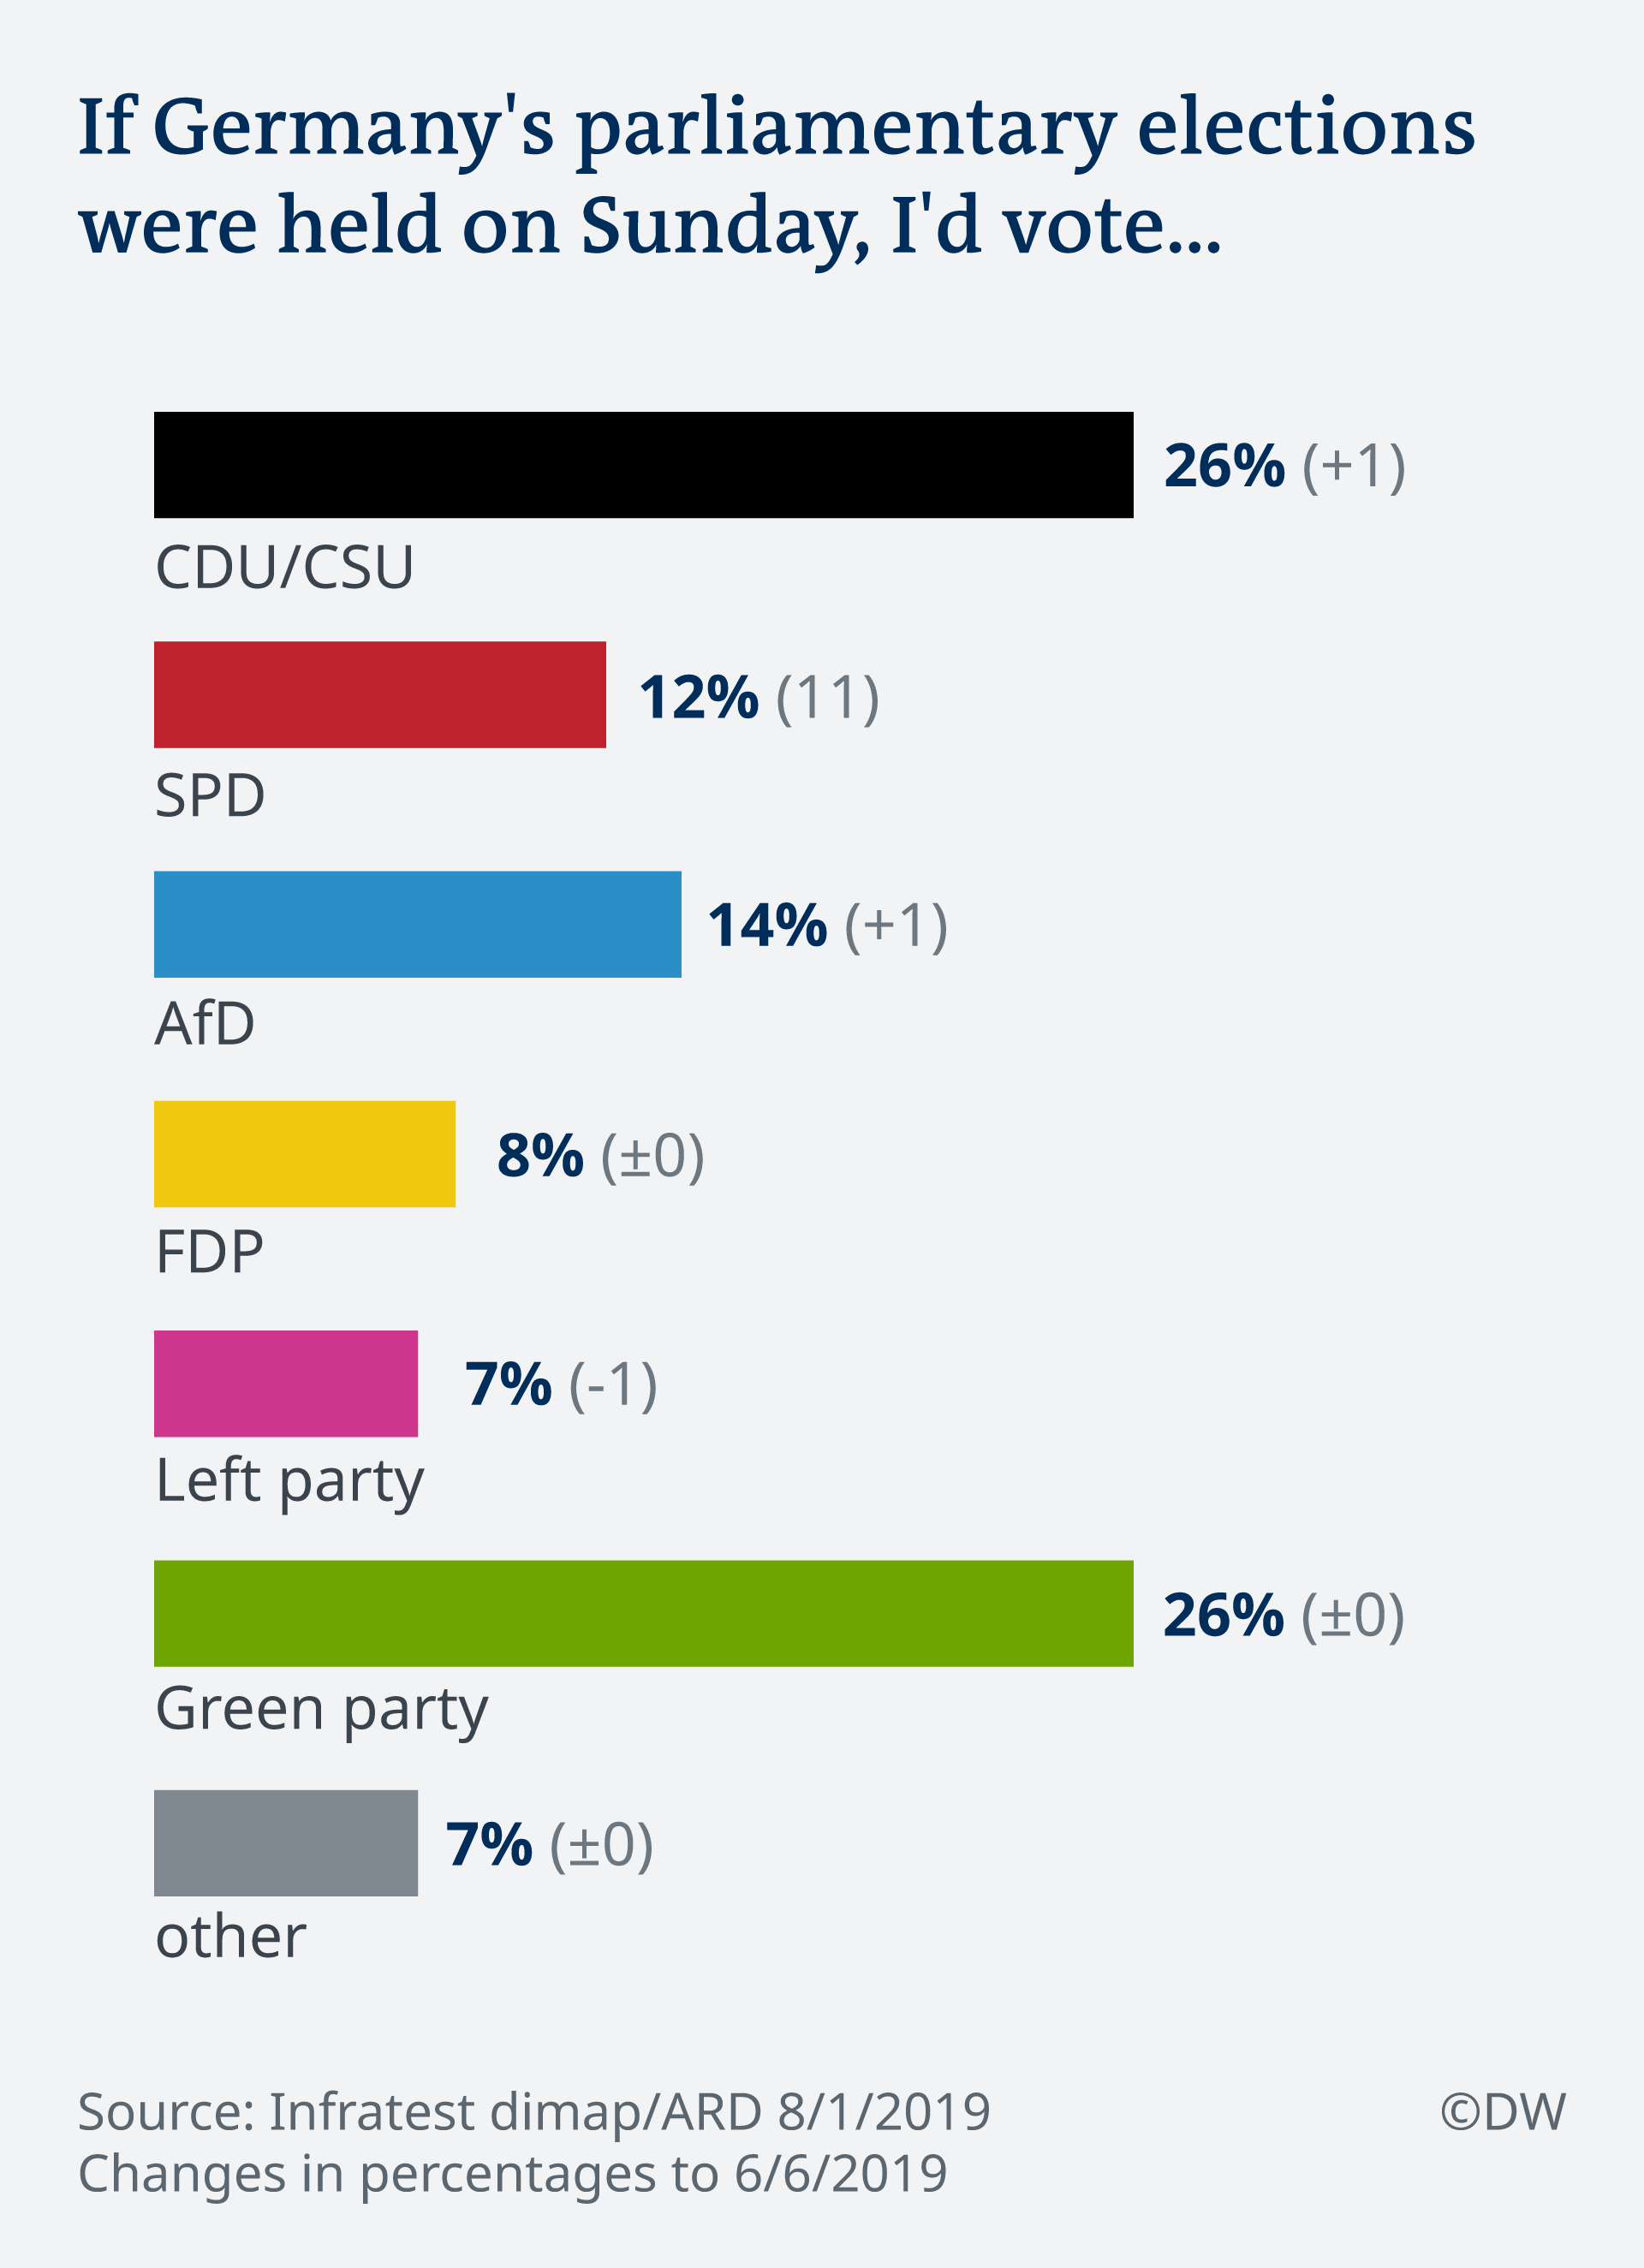 Deutschlandtrend: German political party support